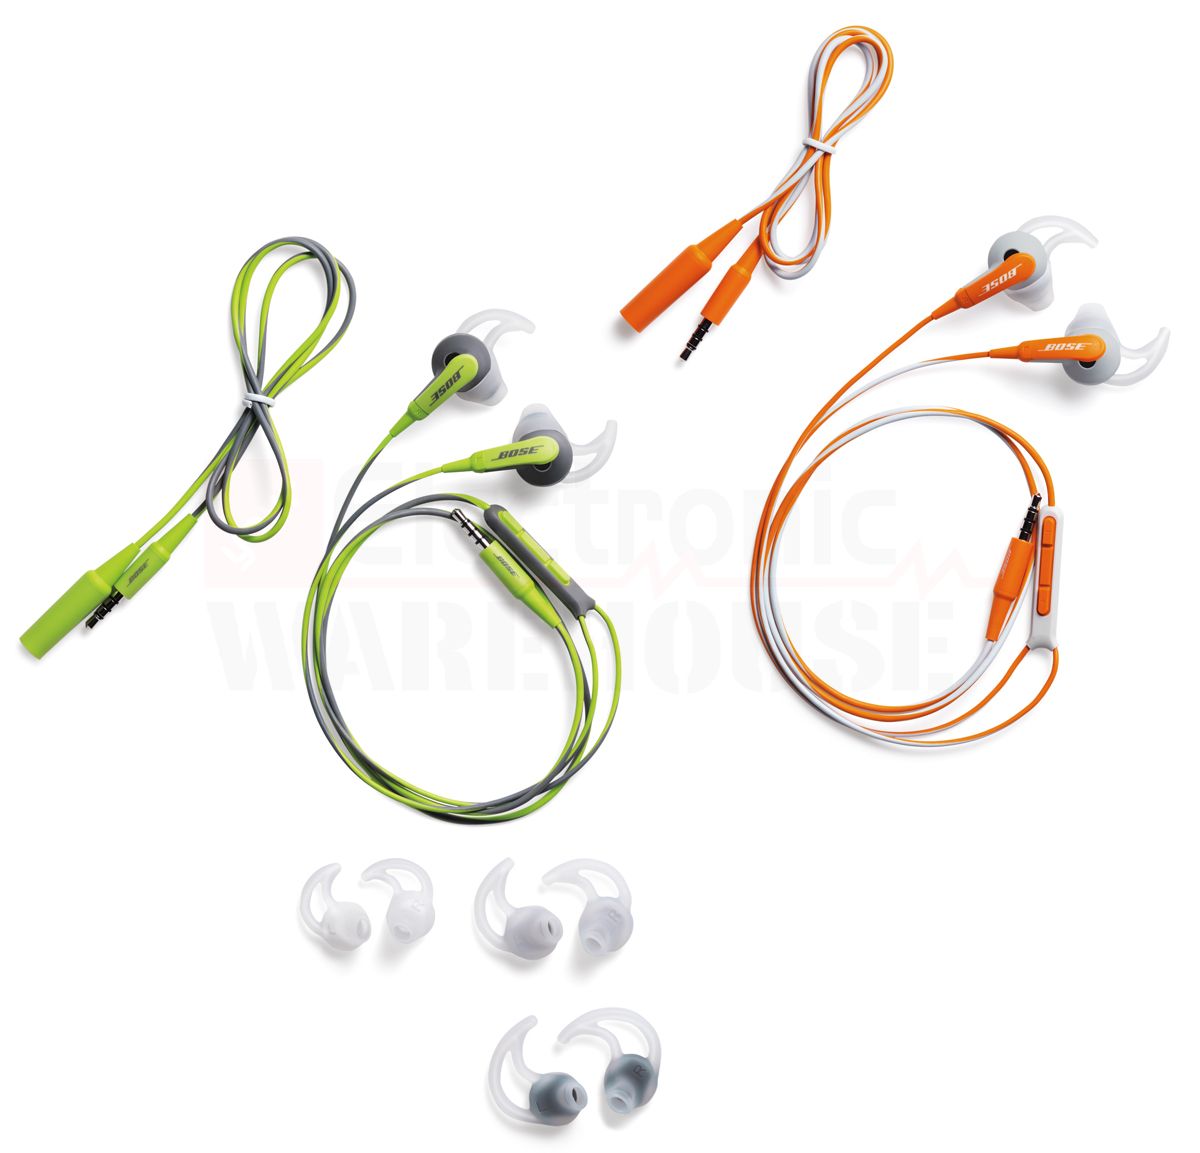 Bose SIE2 and SIE2i Sport Headphones